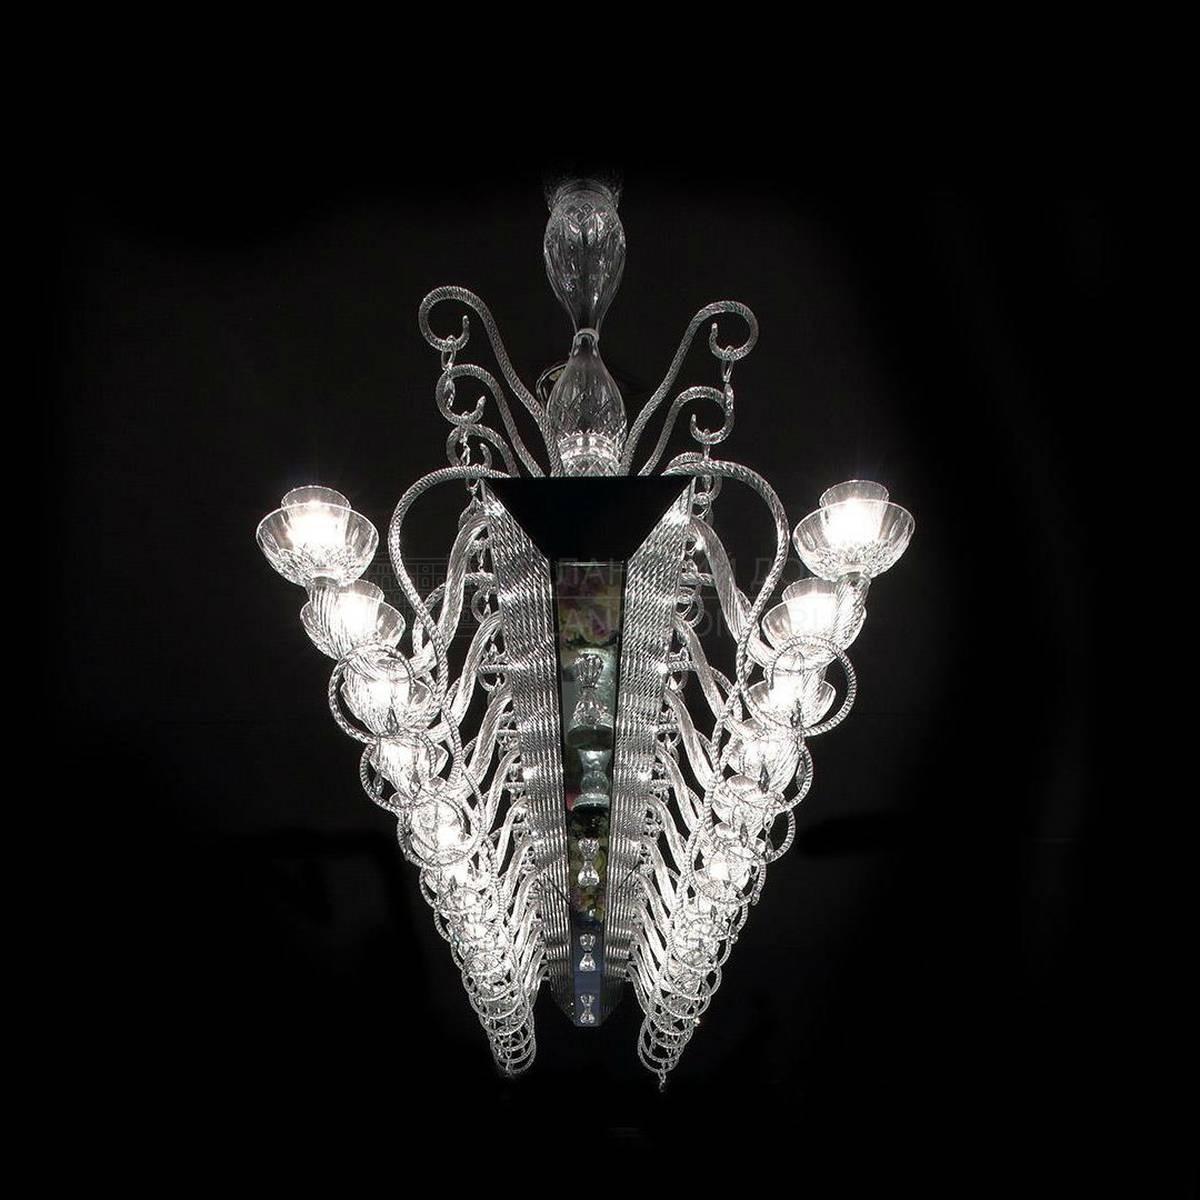 Подвесной светильник Palazzo big из Италии фабрики REFLEX ANGELO